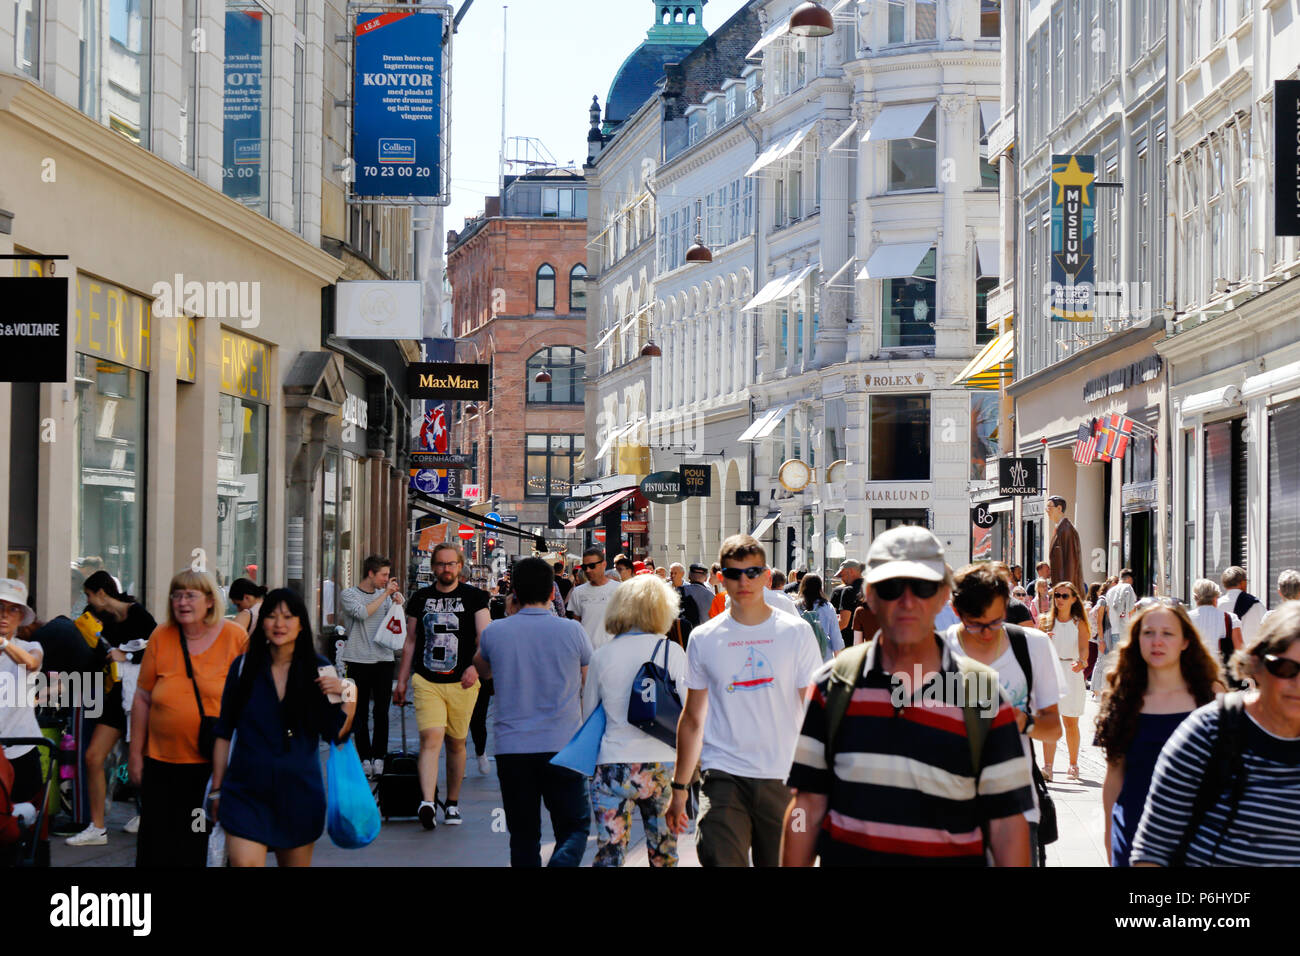 Copenhagen, Denmark - June 27, 2018: People walking the Stroget shopping street in downtown Copenhagen. Stock Photo